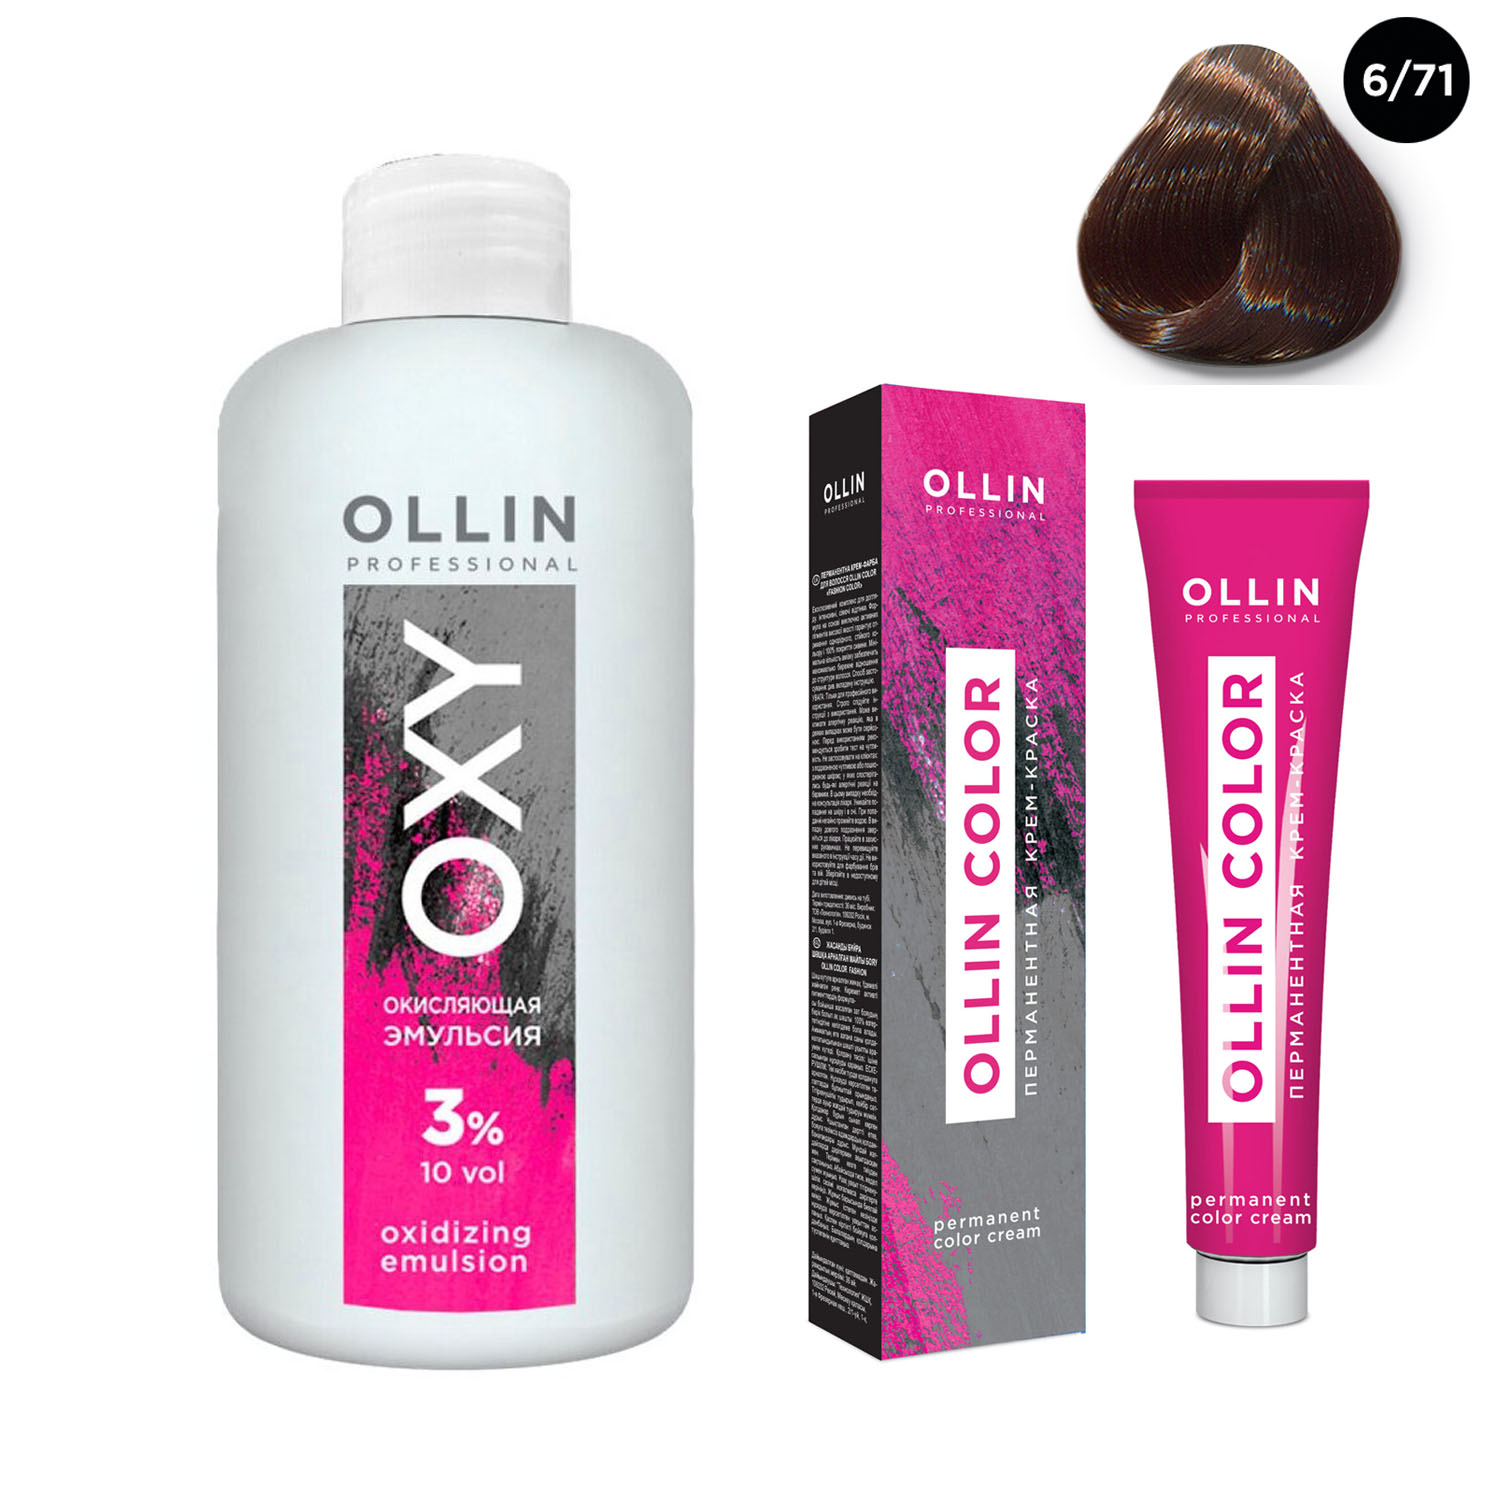 Ollin Professional Набор Перманентная крем-краска для волос Ollin Color оттенок 6/71 темно-русый коричнево-пепельный 100 мл + Окисляющая эмульсия Oxy 3% 150 мл (Ollin Professional, Ollin Color) фото